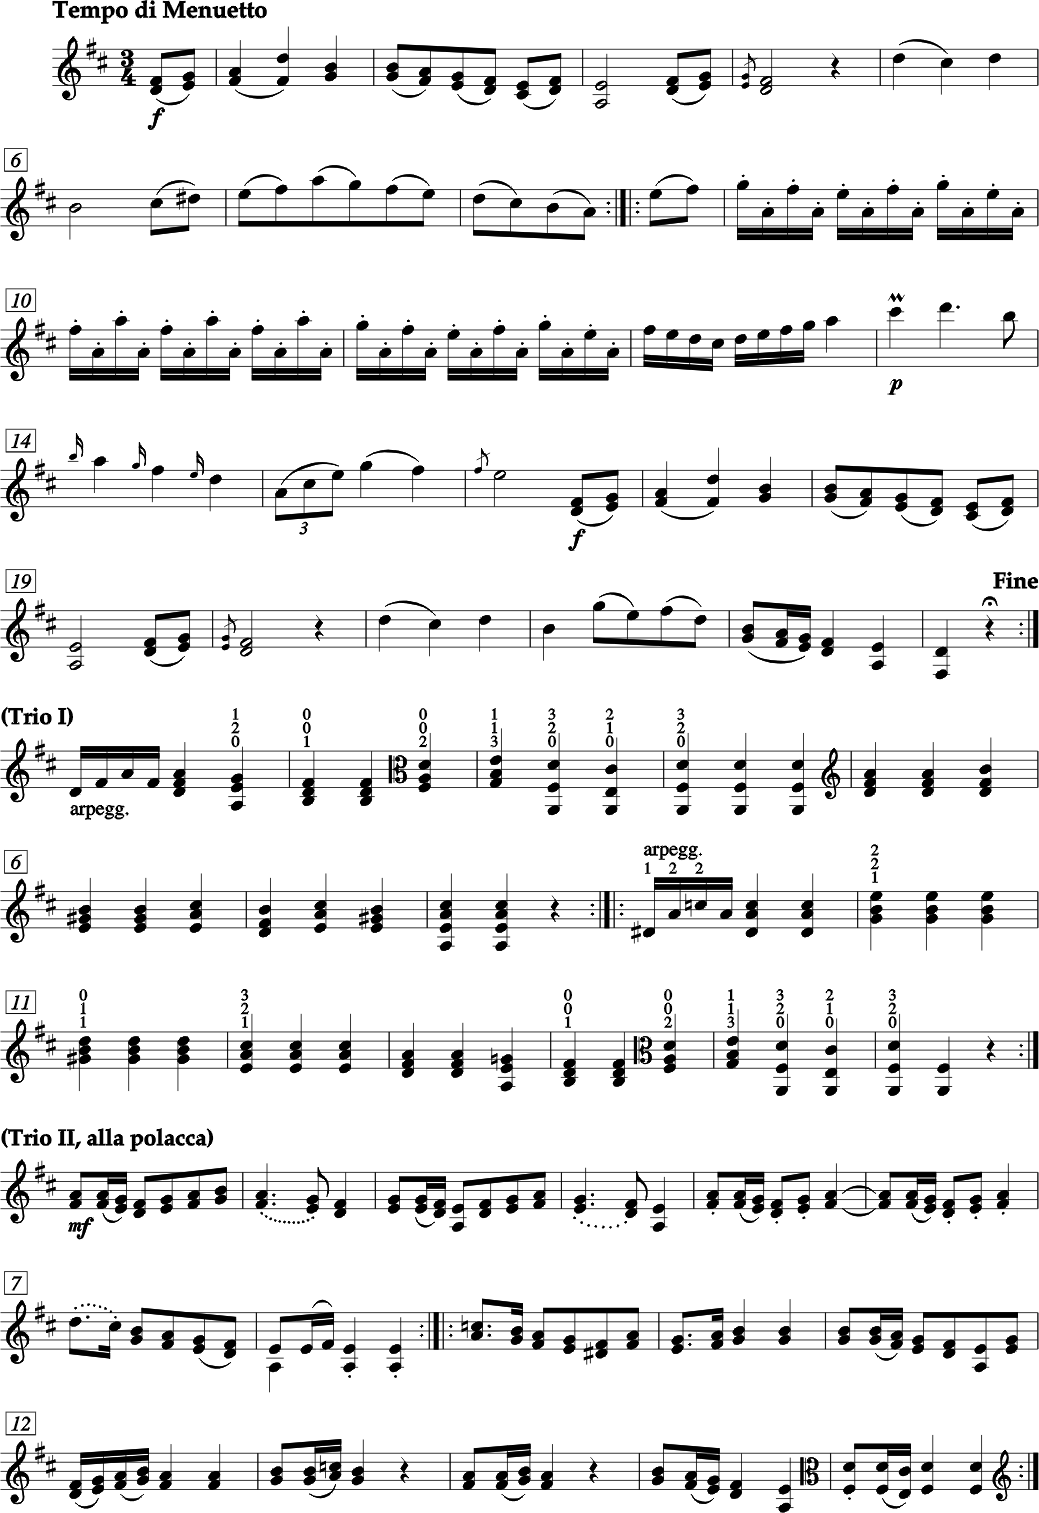 FRANZ ANTON HOFFMEISTER QUARTETTO II Mi bemolle maggiore (Re maggiore) per Viola d'amore, due Violini, Violoncello e due Corni ad libitum